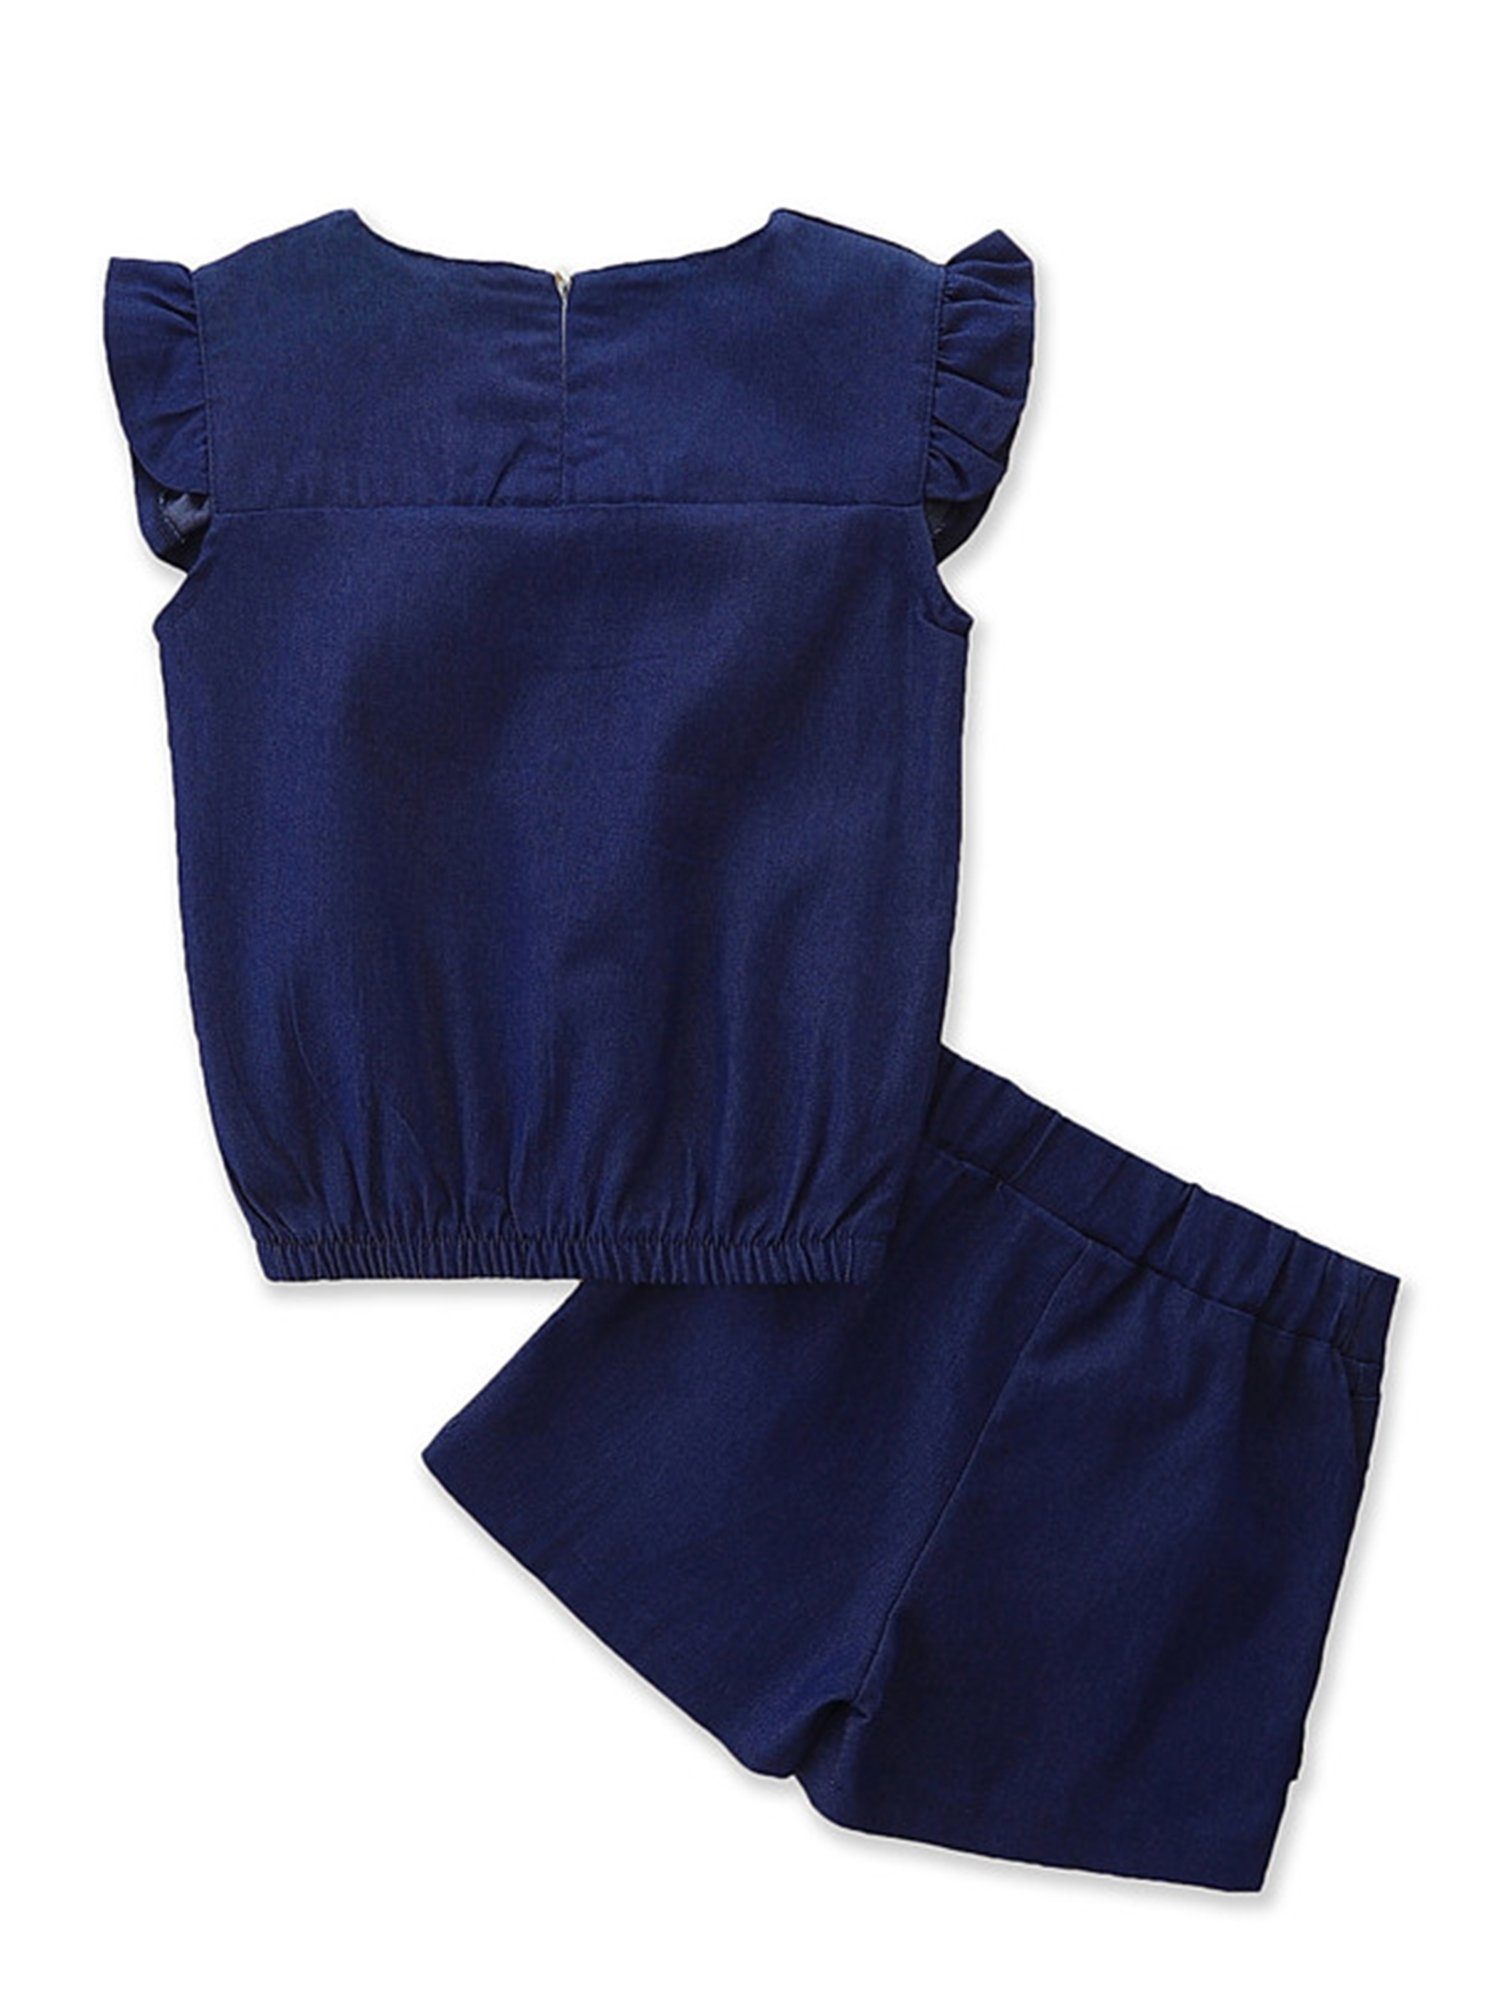 Kinder Mädchen (Gr. 50 - 92) LAPA Shirt & Shorts Ärmelloser Jeansanzug für Mädchen, zweiteilig